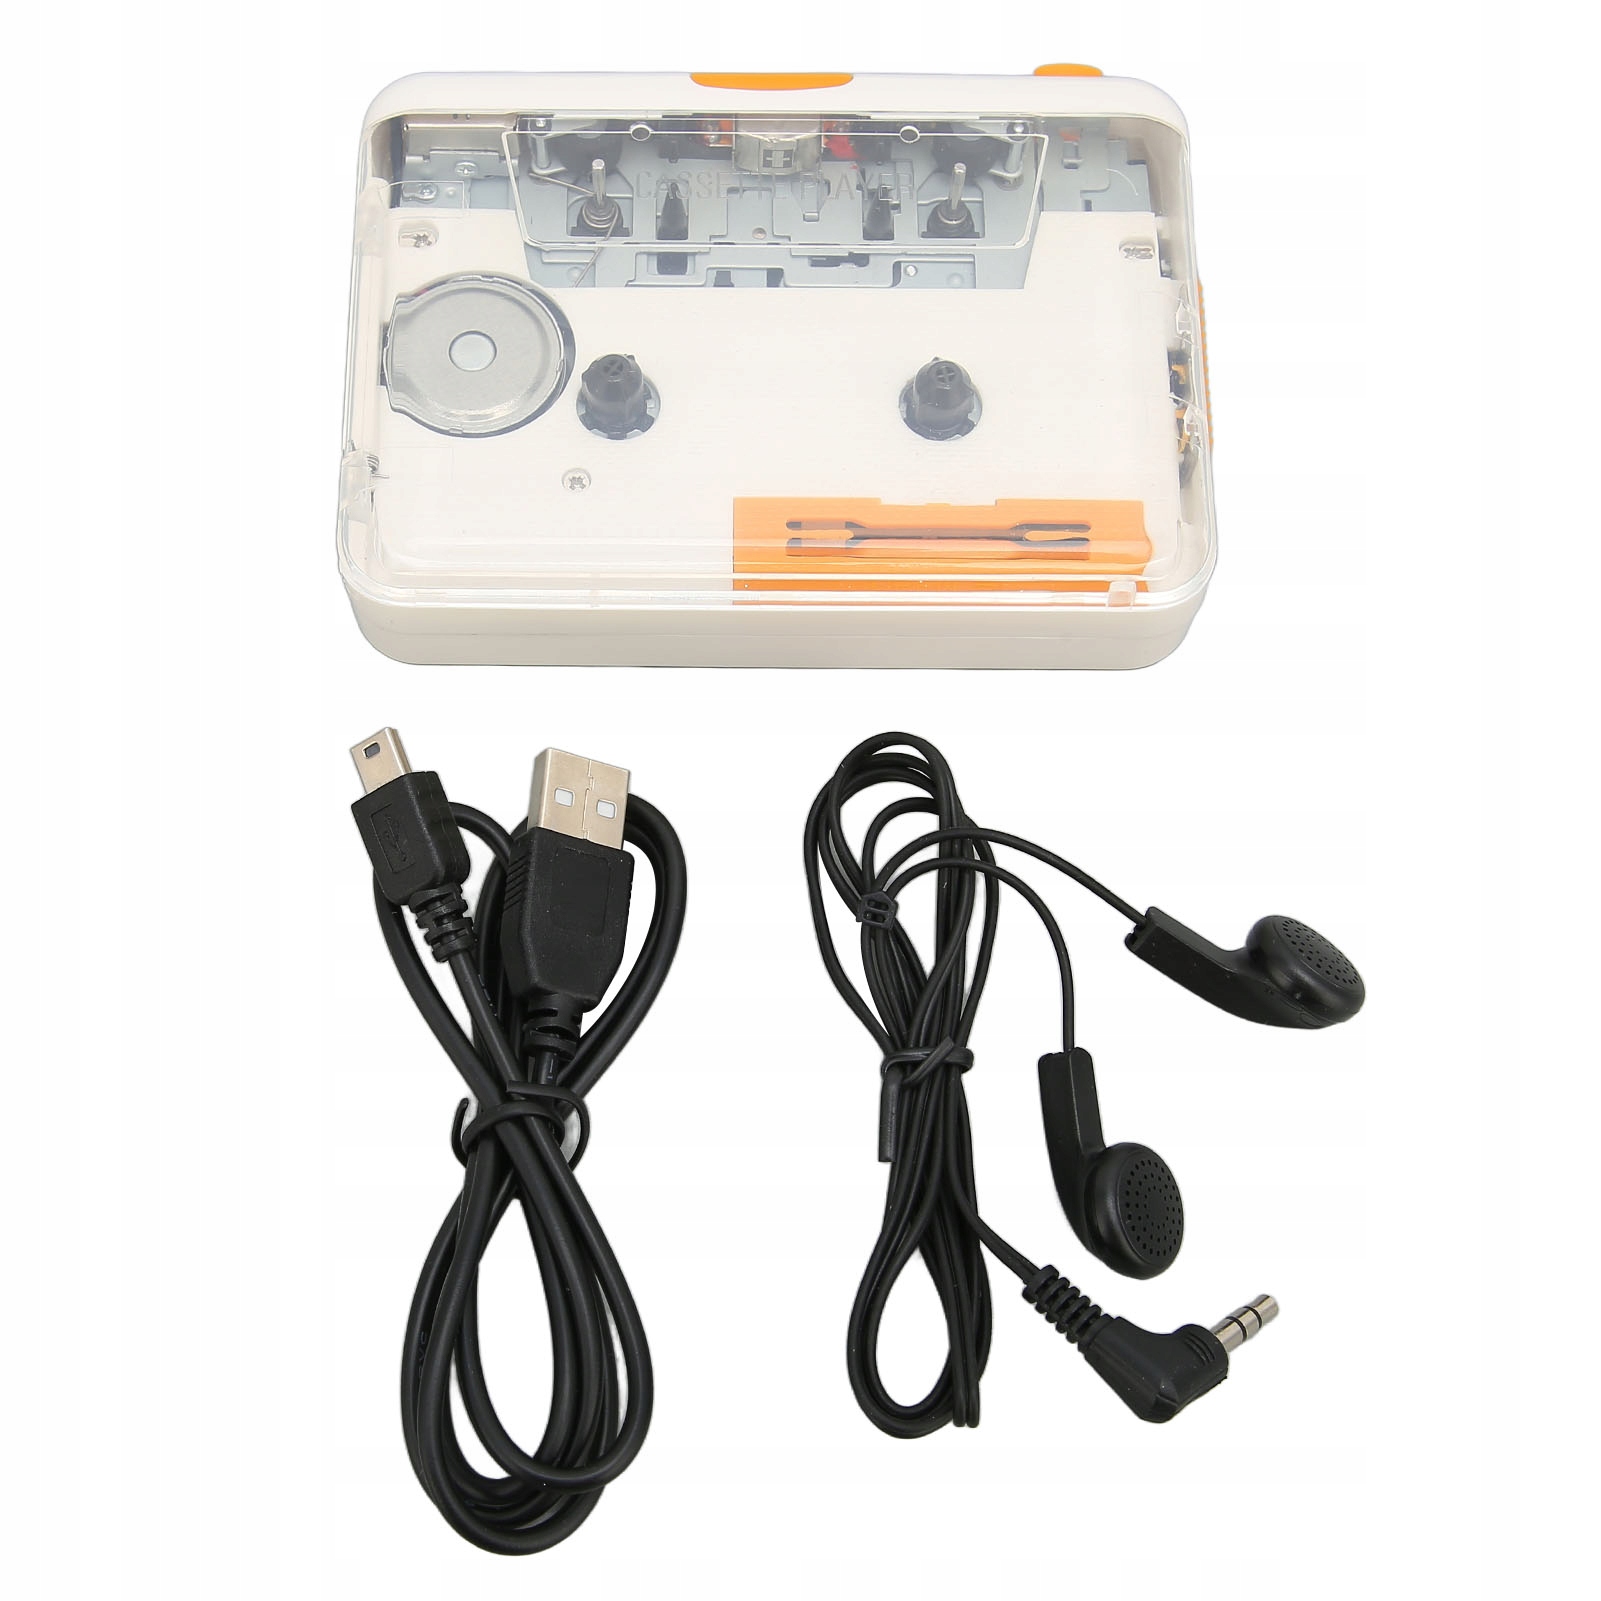 USB kazetový konvertor Plug and Play Přenosný MP3 za 564 Kč od henan -  Allegro - (13907703015)